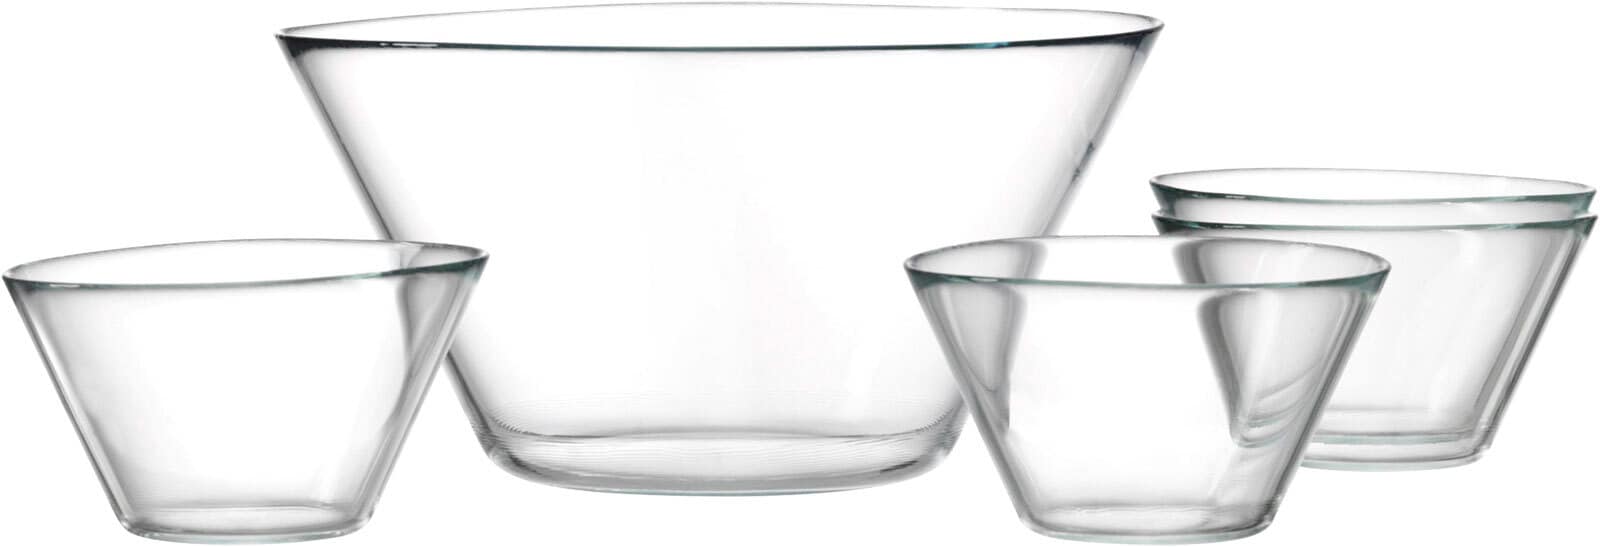 Ritzenhoff & Breker Schalenset INGA 5-teilig Glas